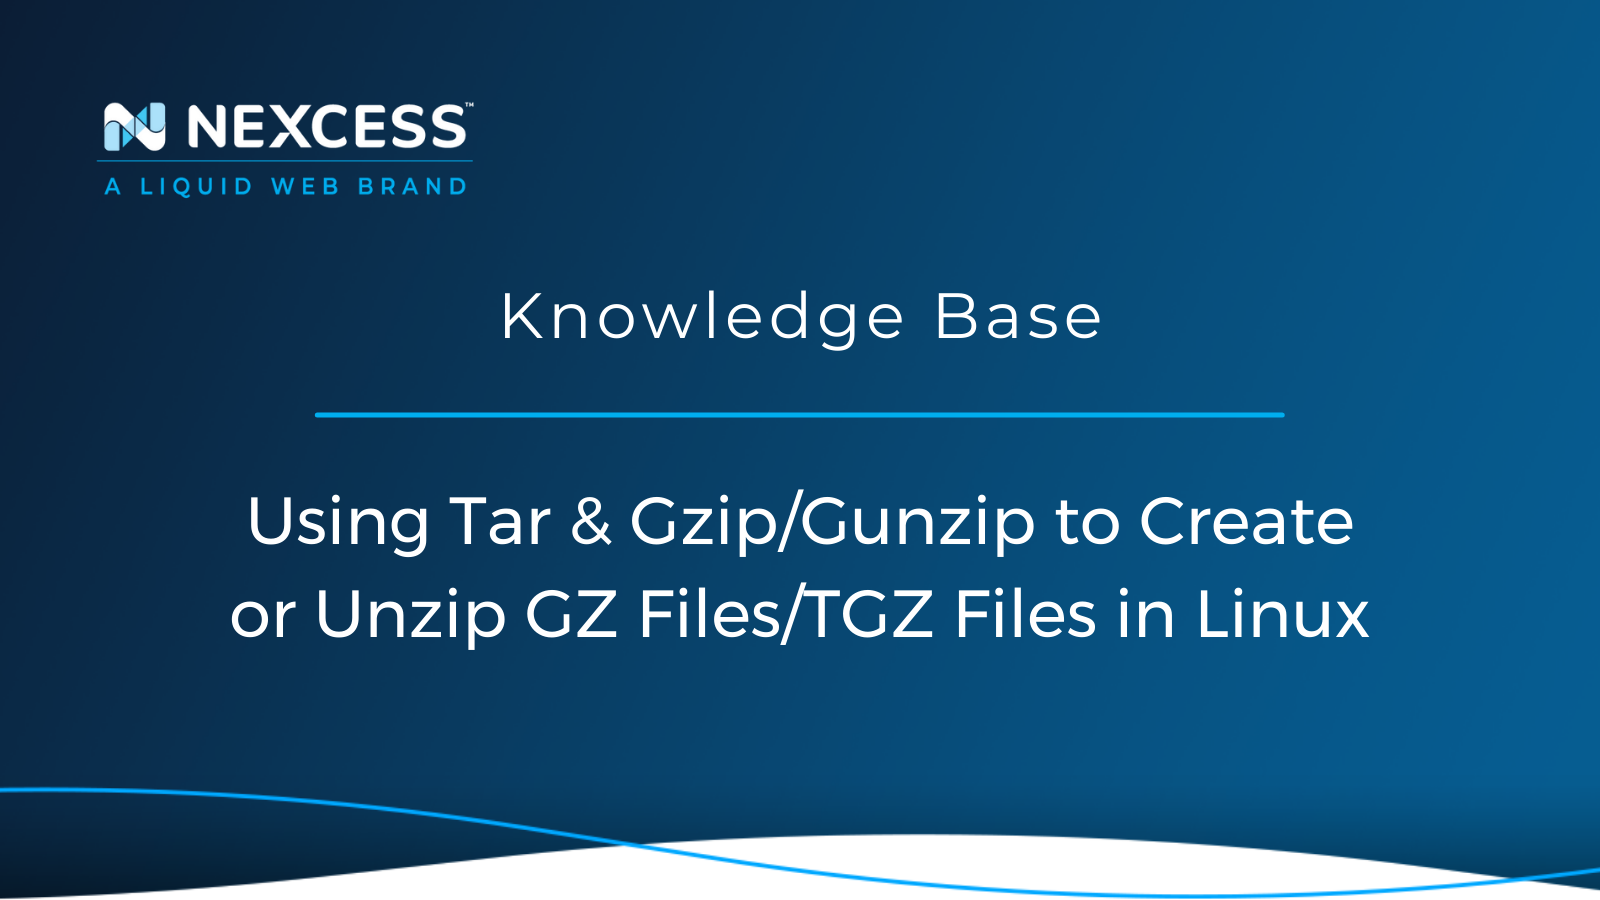  Using Tar & Gzip/Gunzip to Create or Unzip GZ Files/TGZ Files in Linux